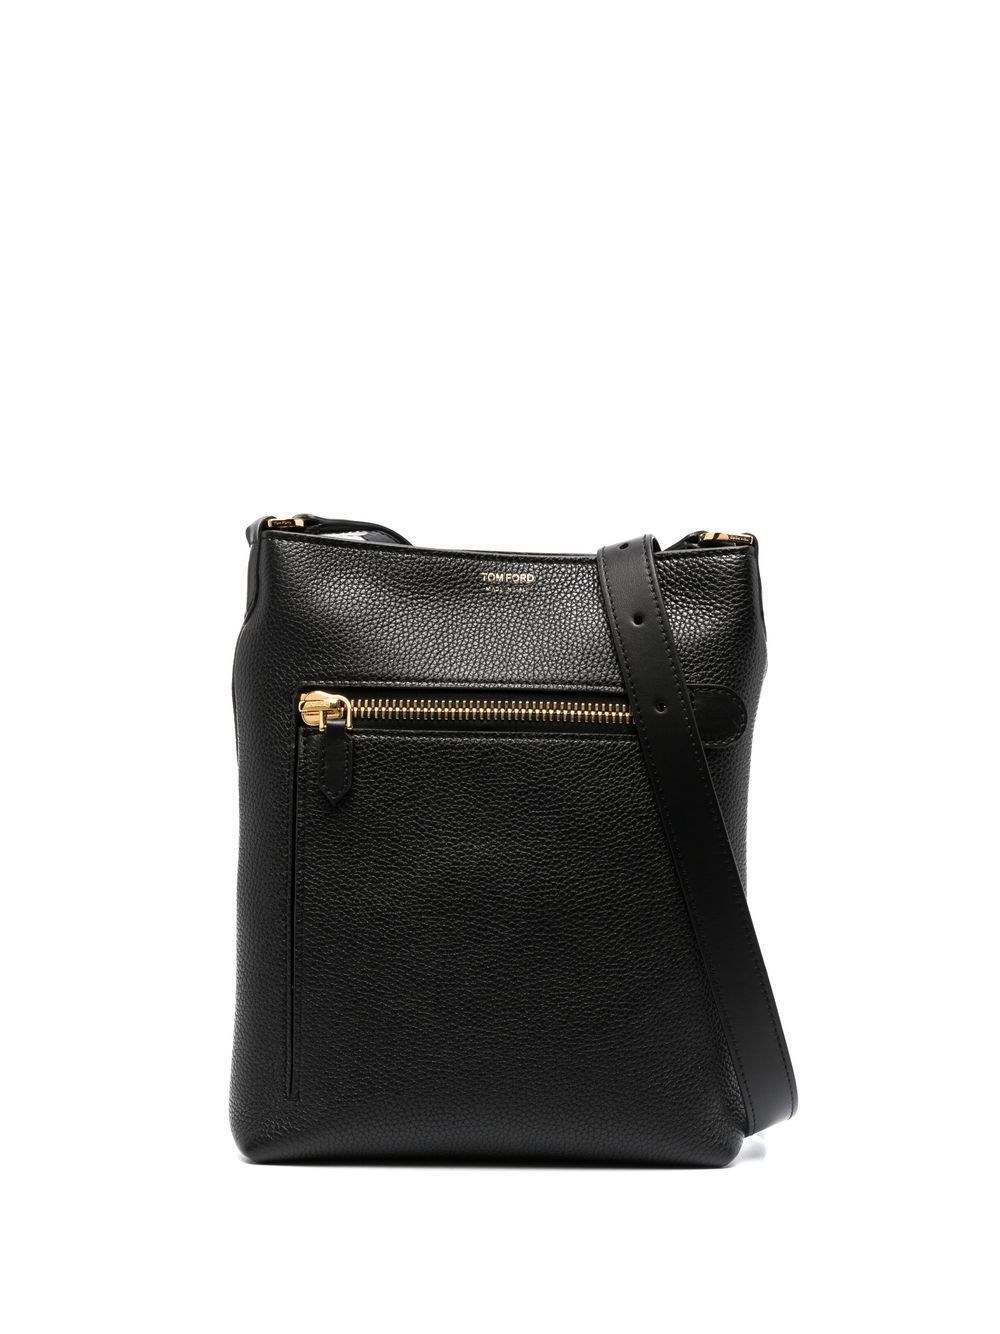 Tom Ford Messenger Bag In Black | ModeSens